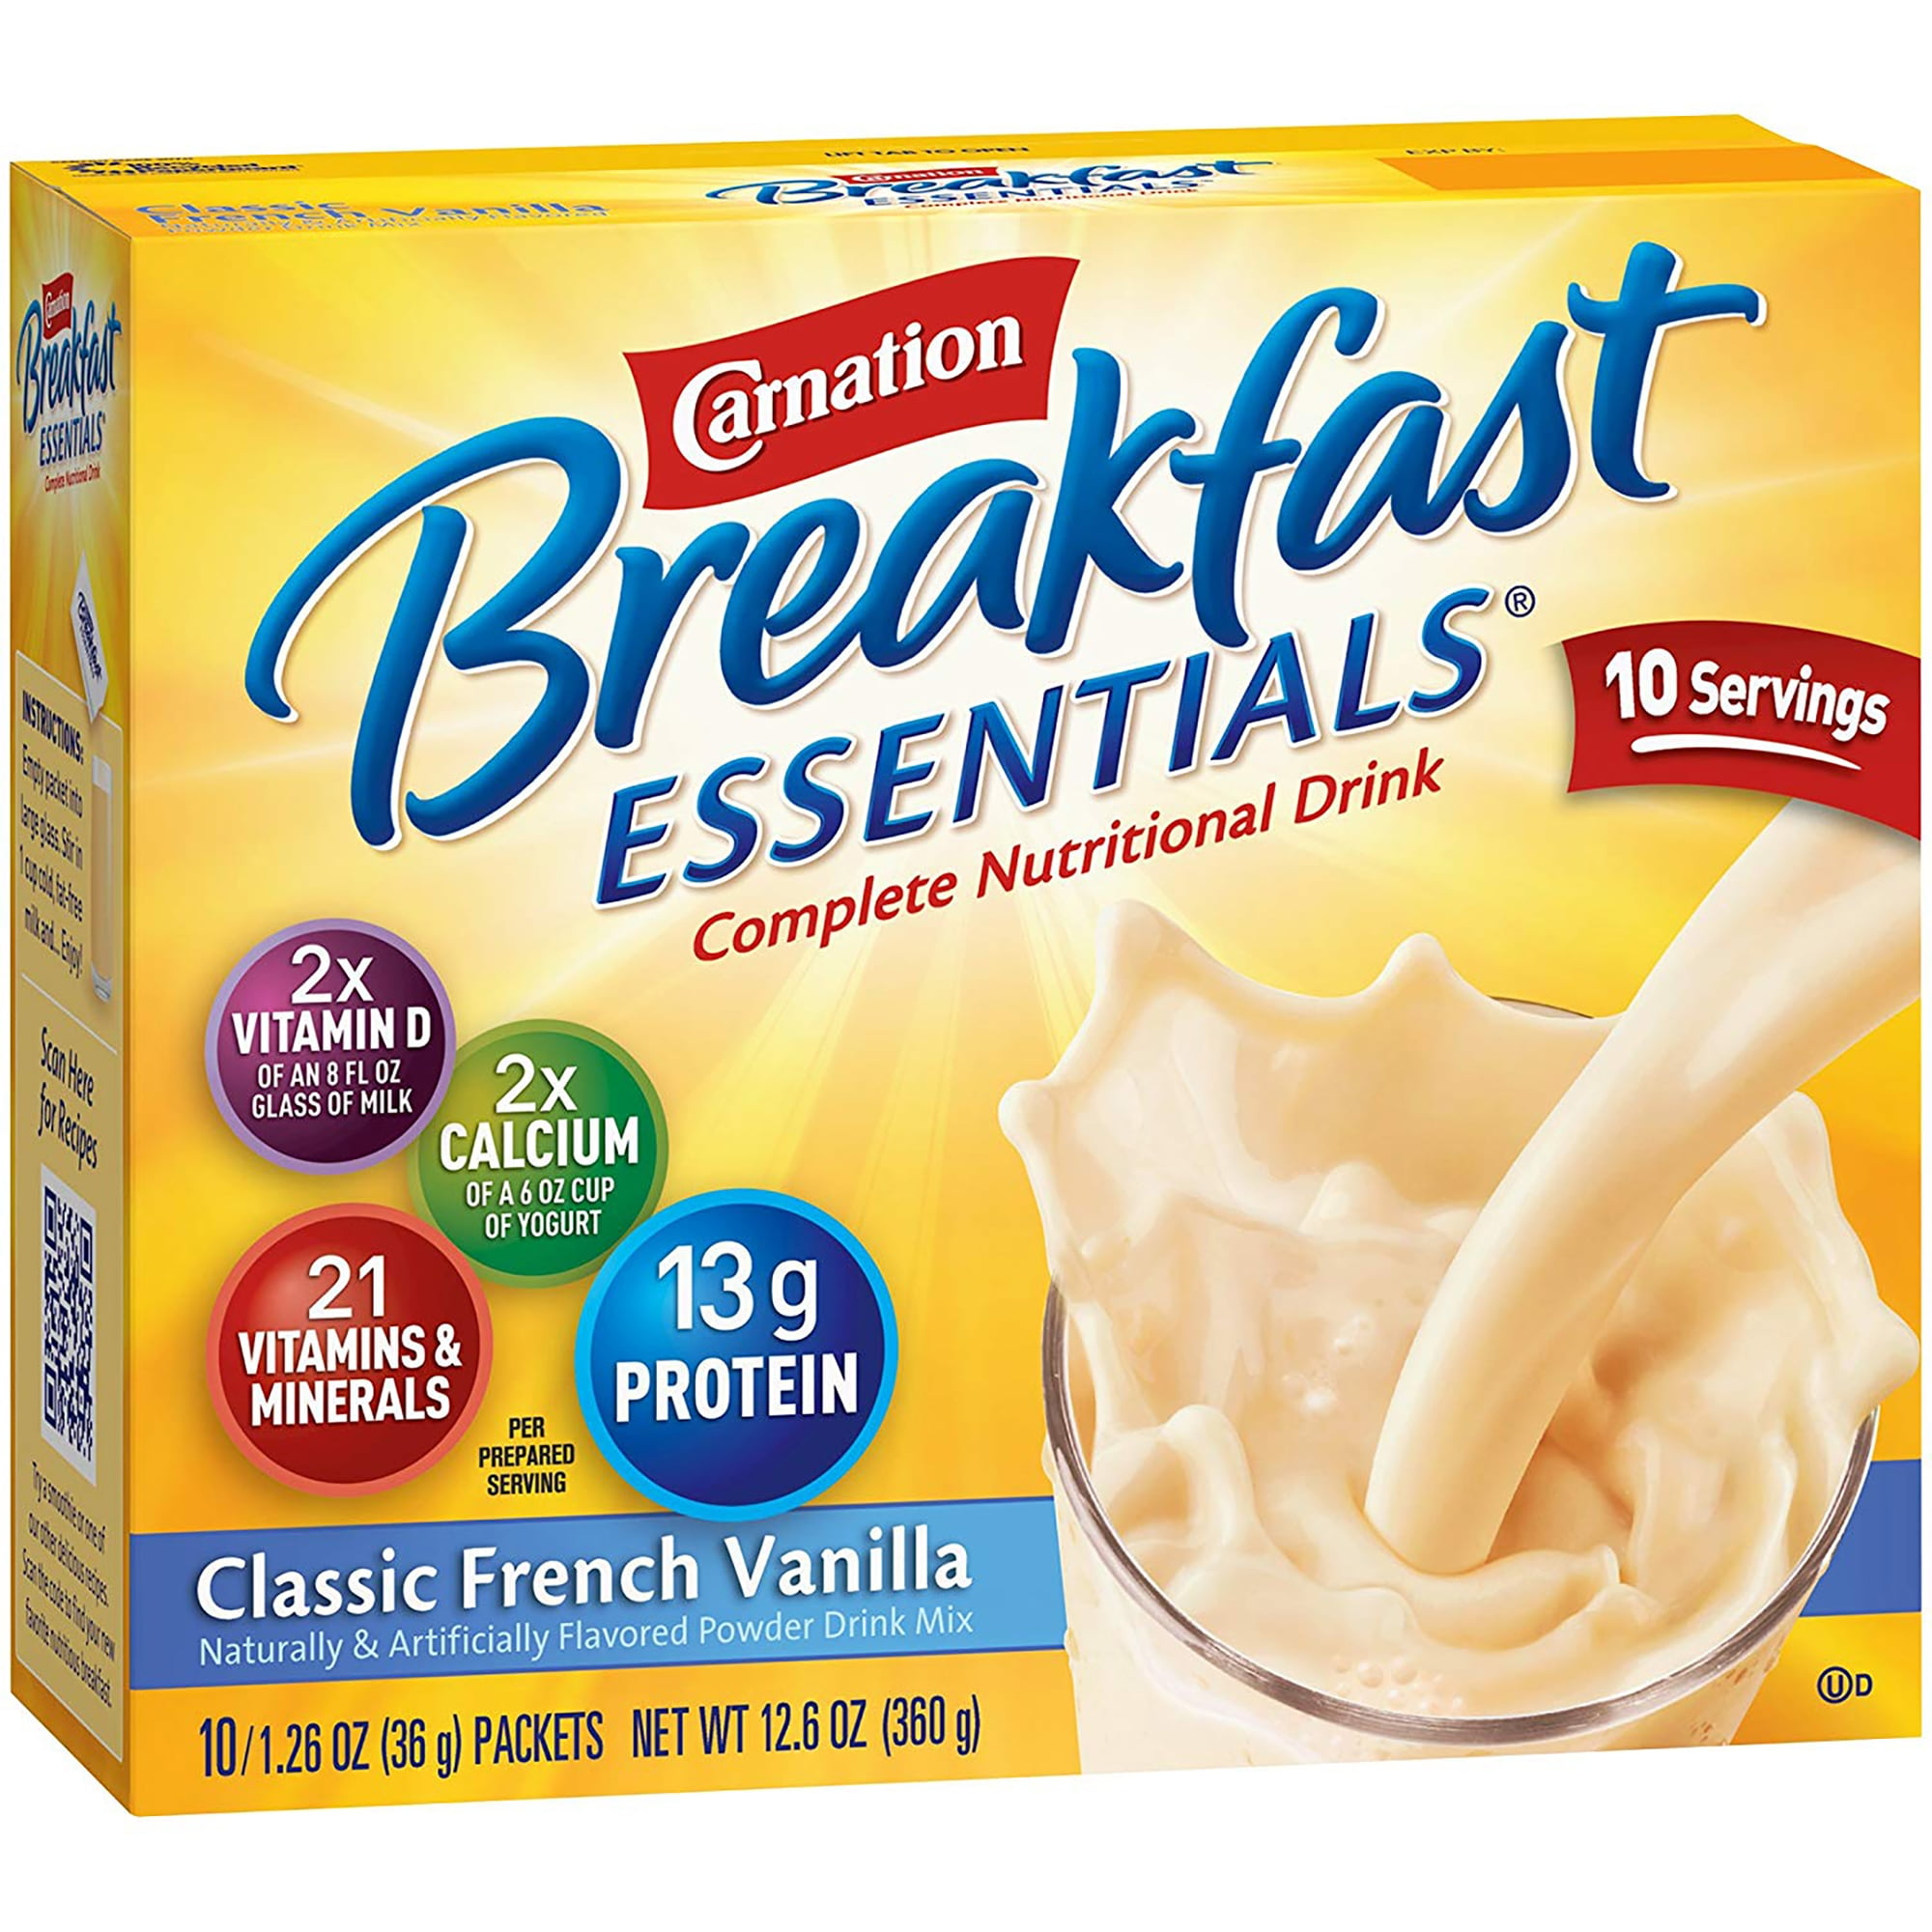 Carnation Breakfast Essentials Complete